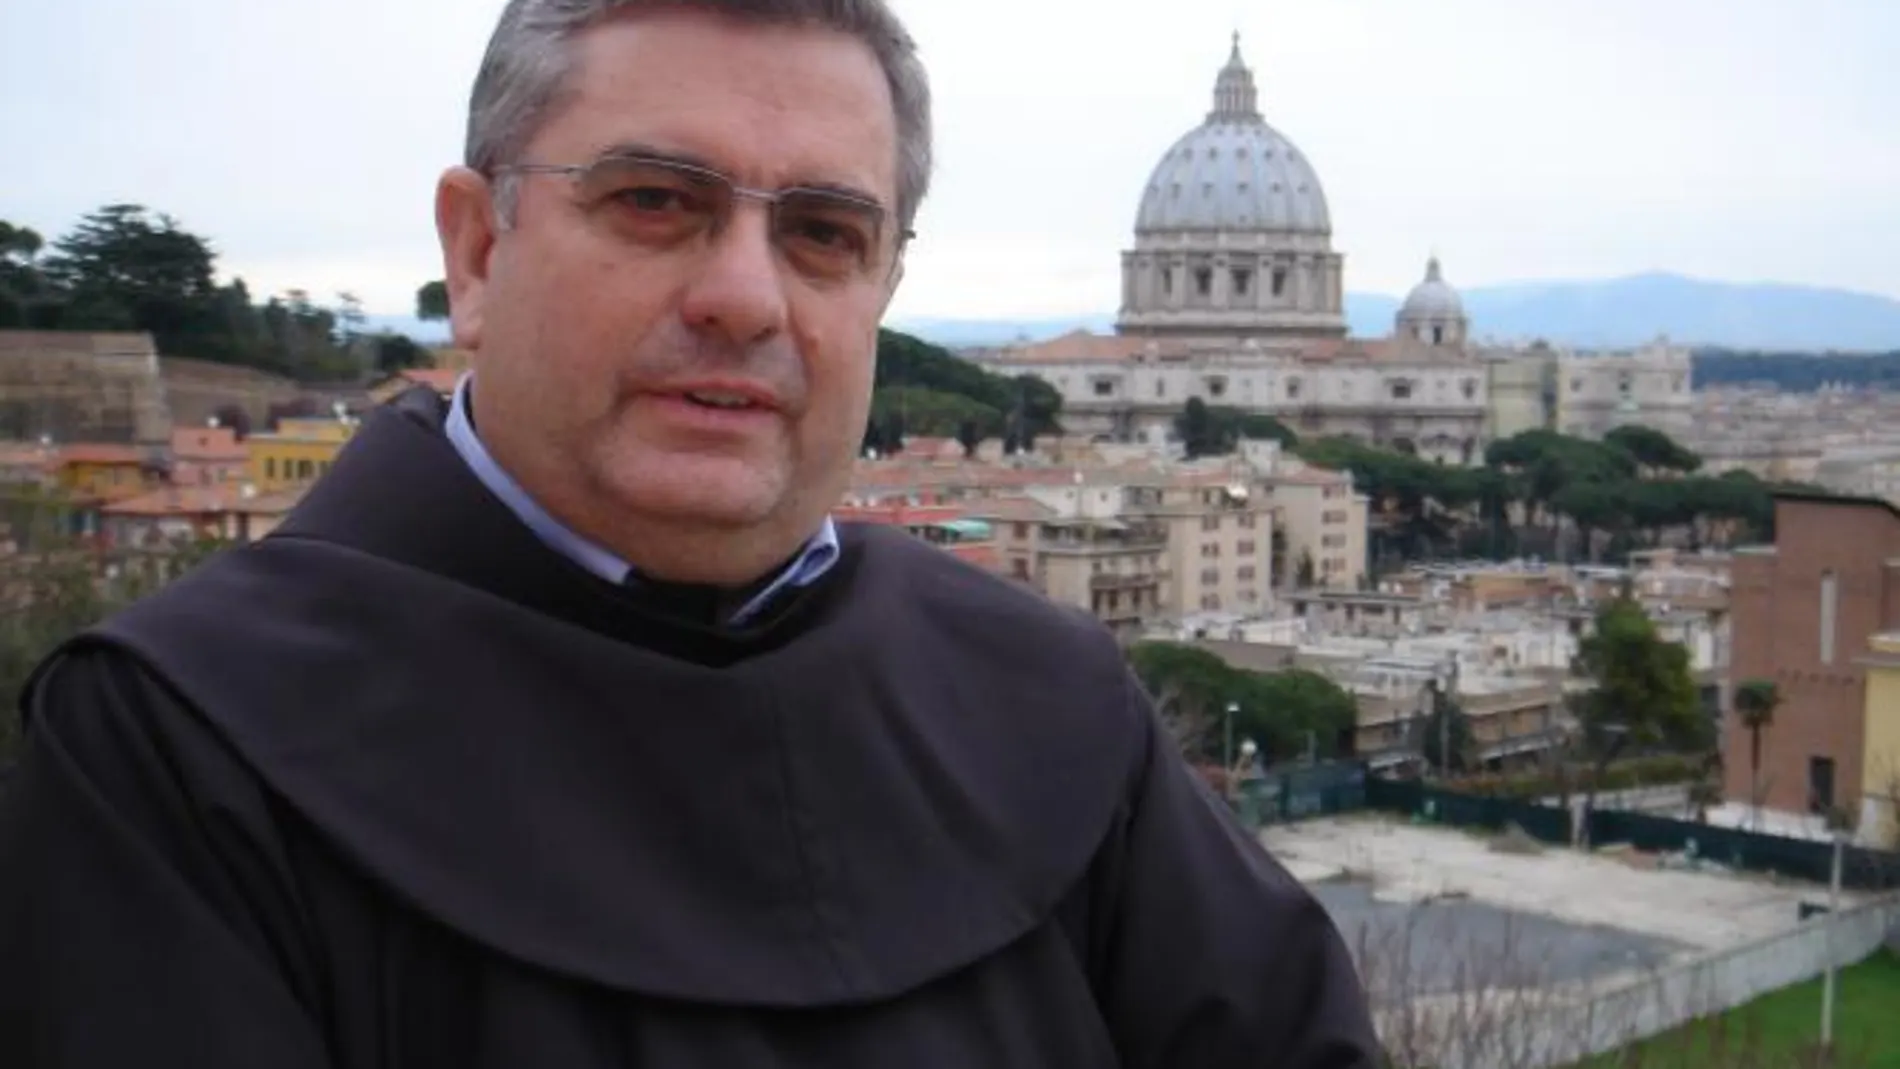 Fray José Rodríguez Carballo, nacido en un pueblo de Orense en 1953 es, desde 2003, el ministro general de los Franciscanos, una de las congregaciones más numerosas de la Iglesia católica, con 16.000 religiosos presentes en 114 países. Rodríguez ha estado